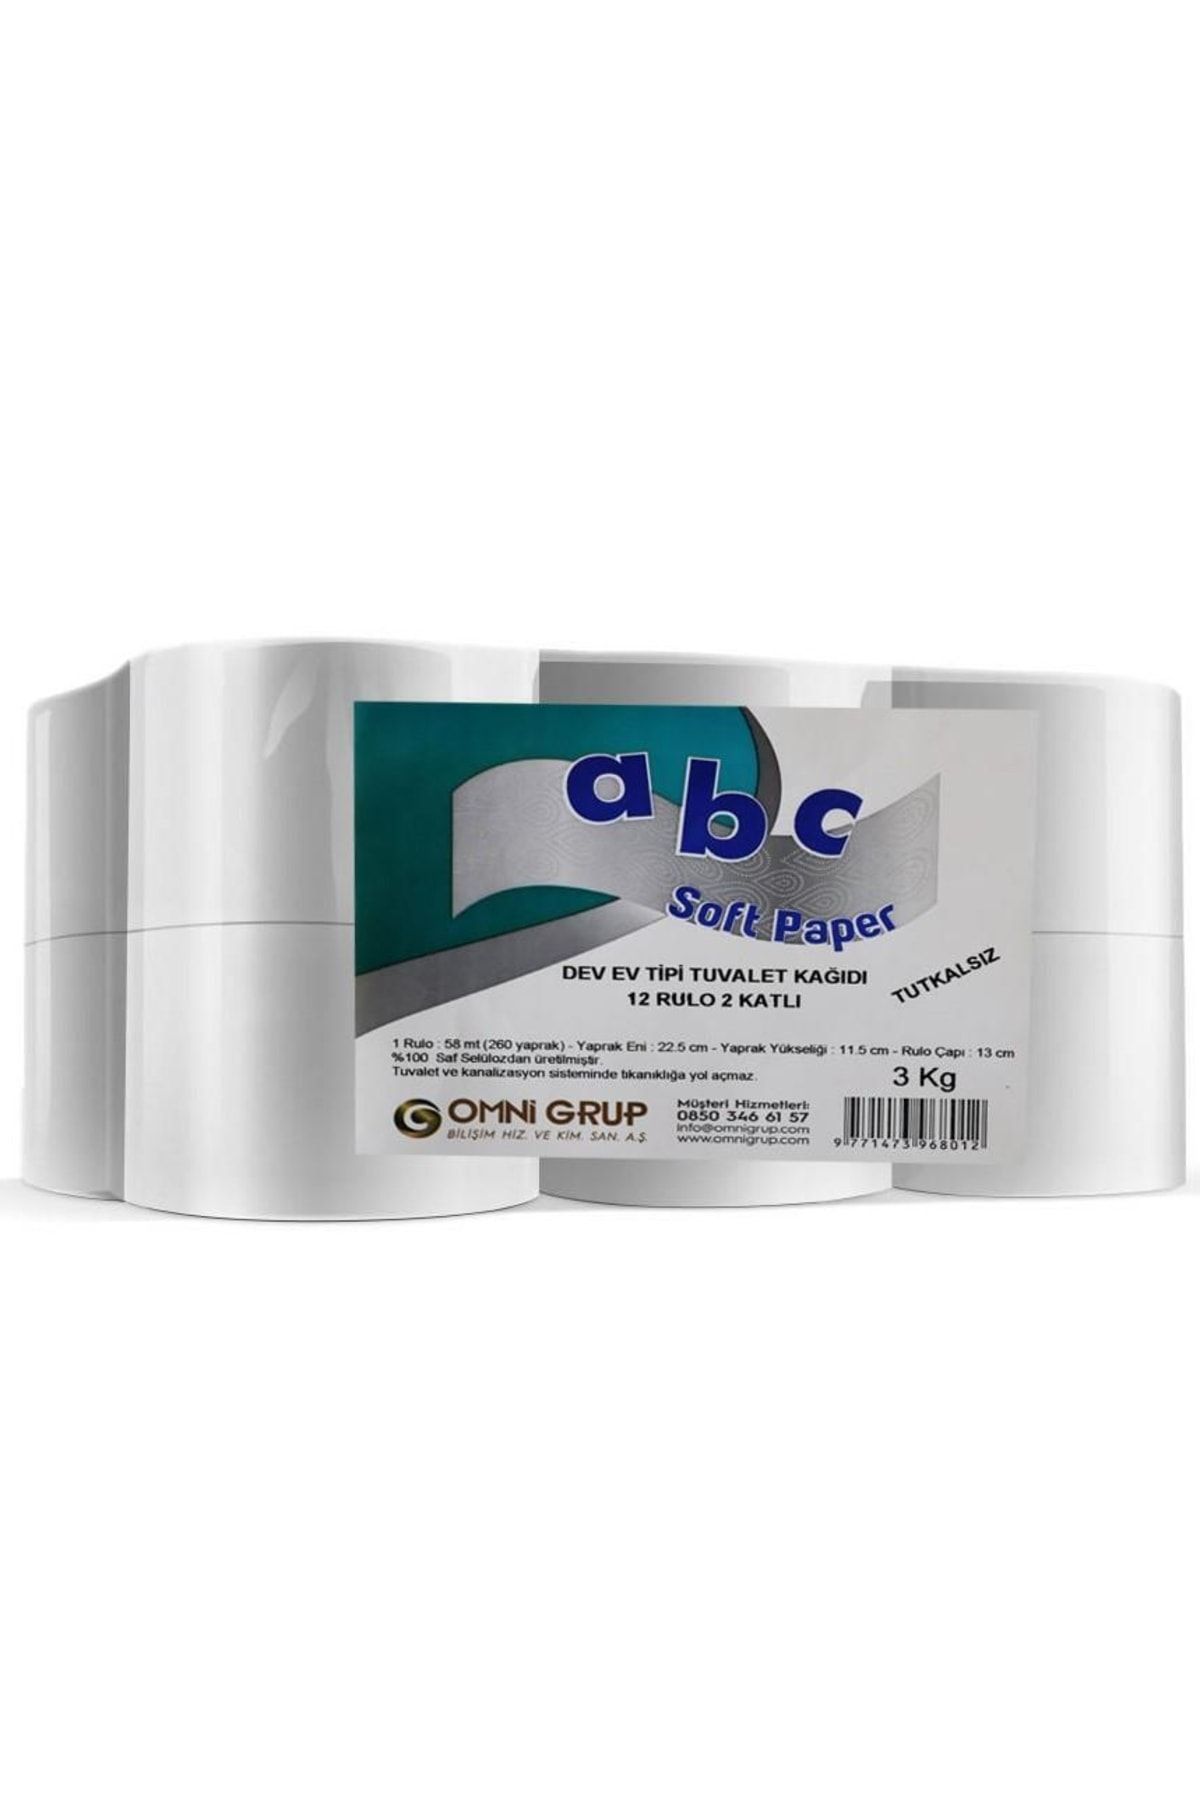 ABC Soft Dev Ev Tipi Tuvalet Kağıdı 12 Rulo 2 Katlı